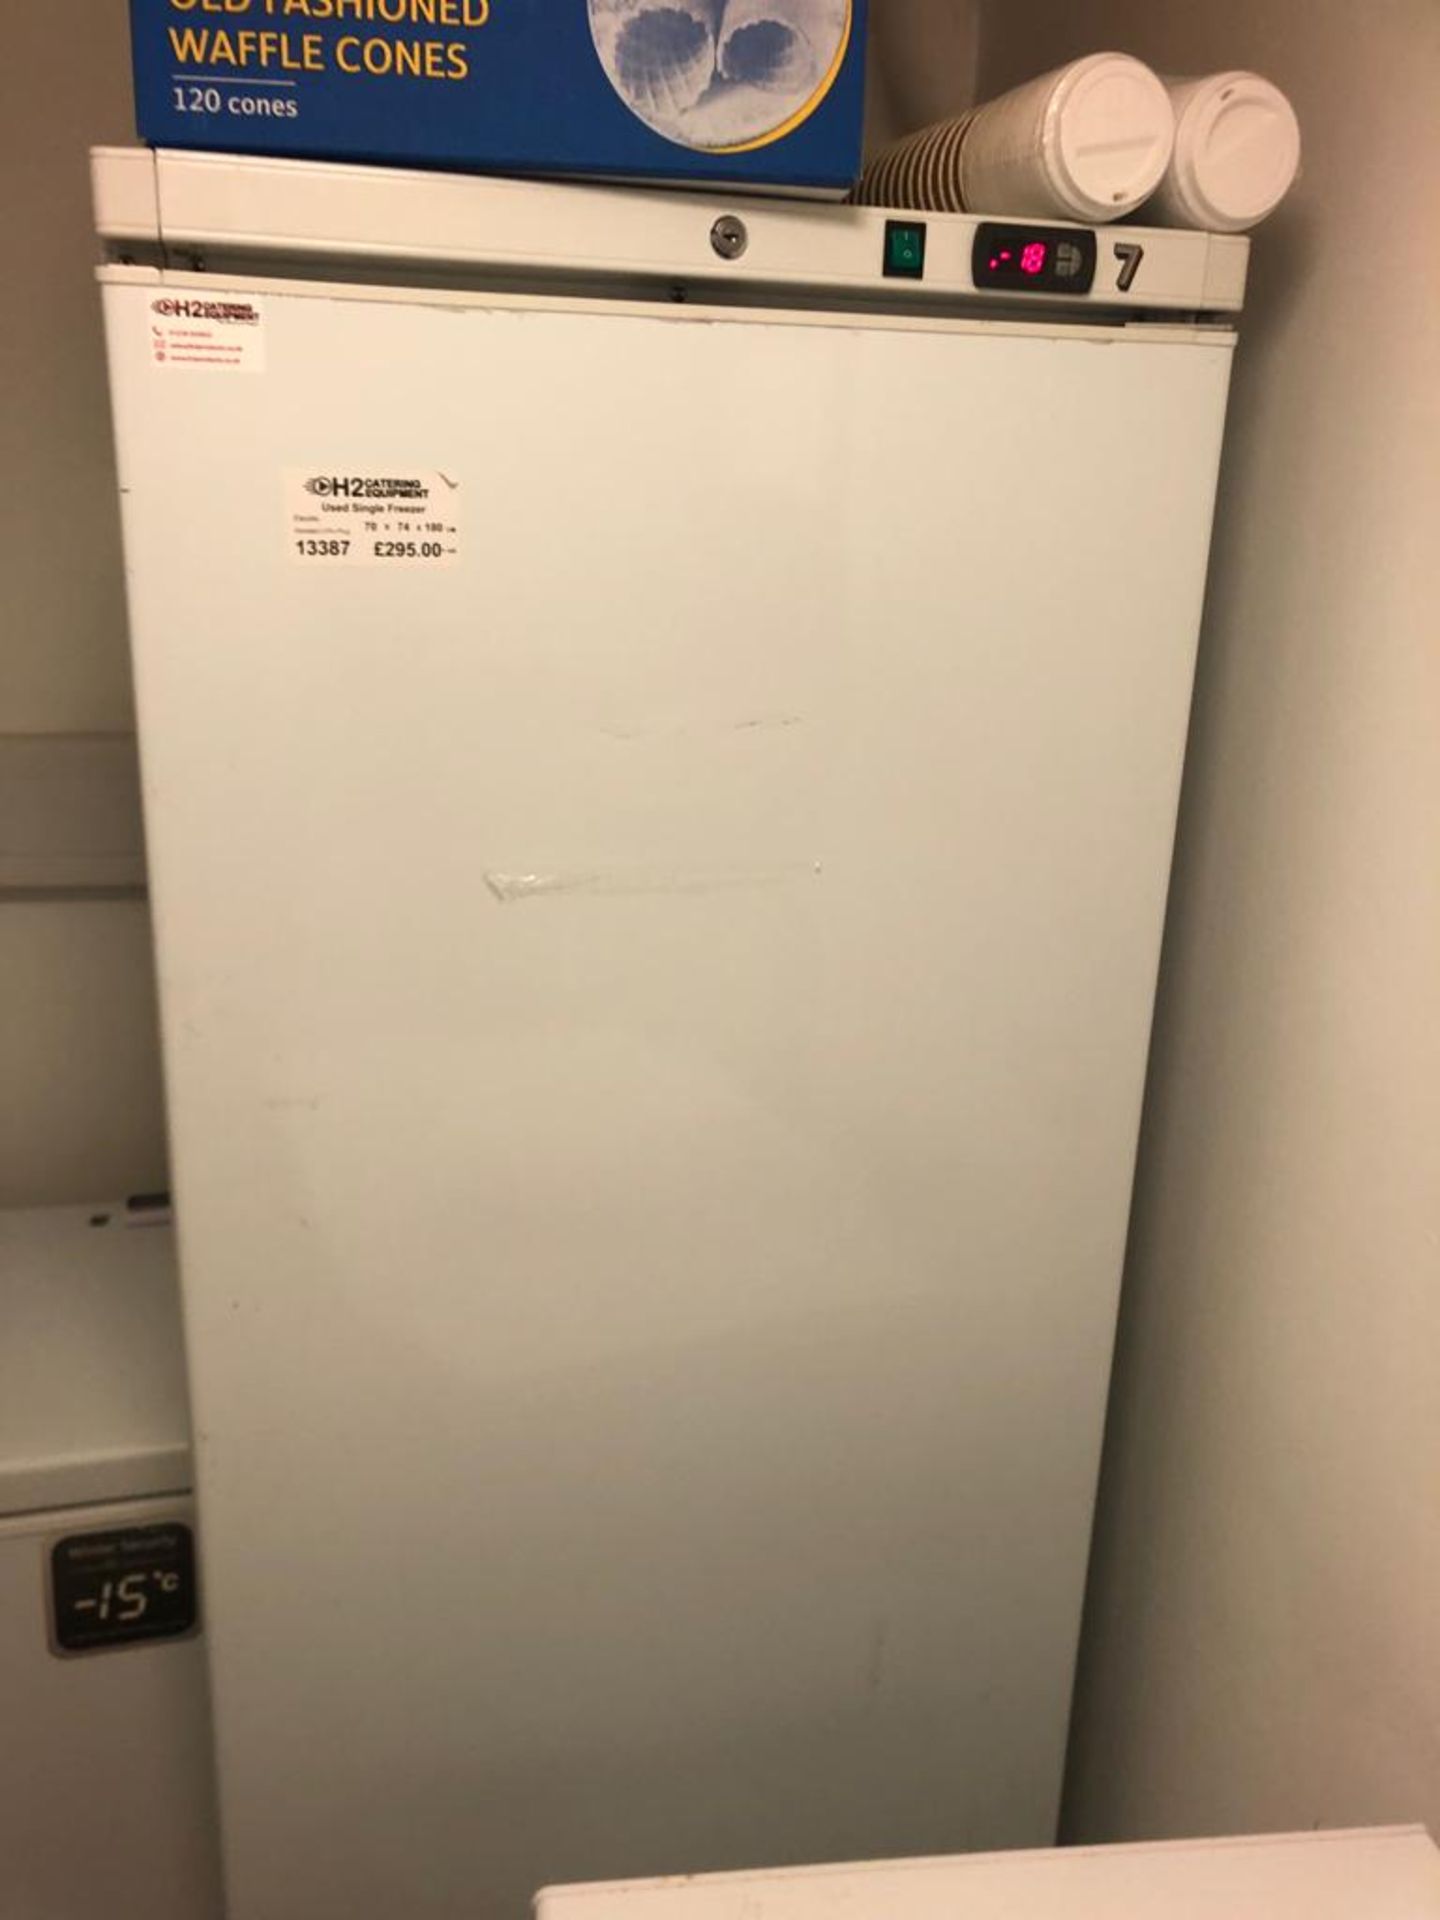 BD-508 Single Freezer